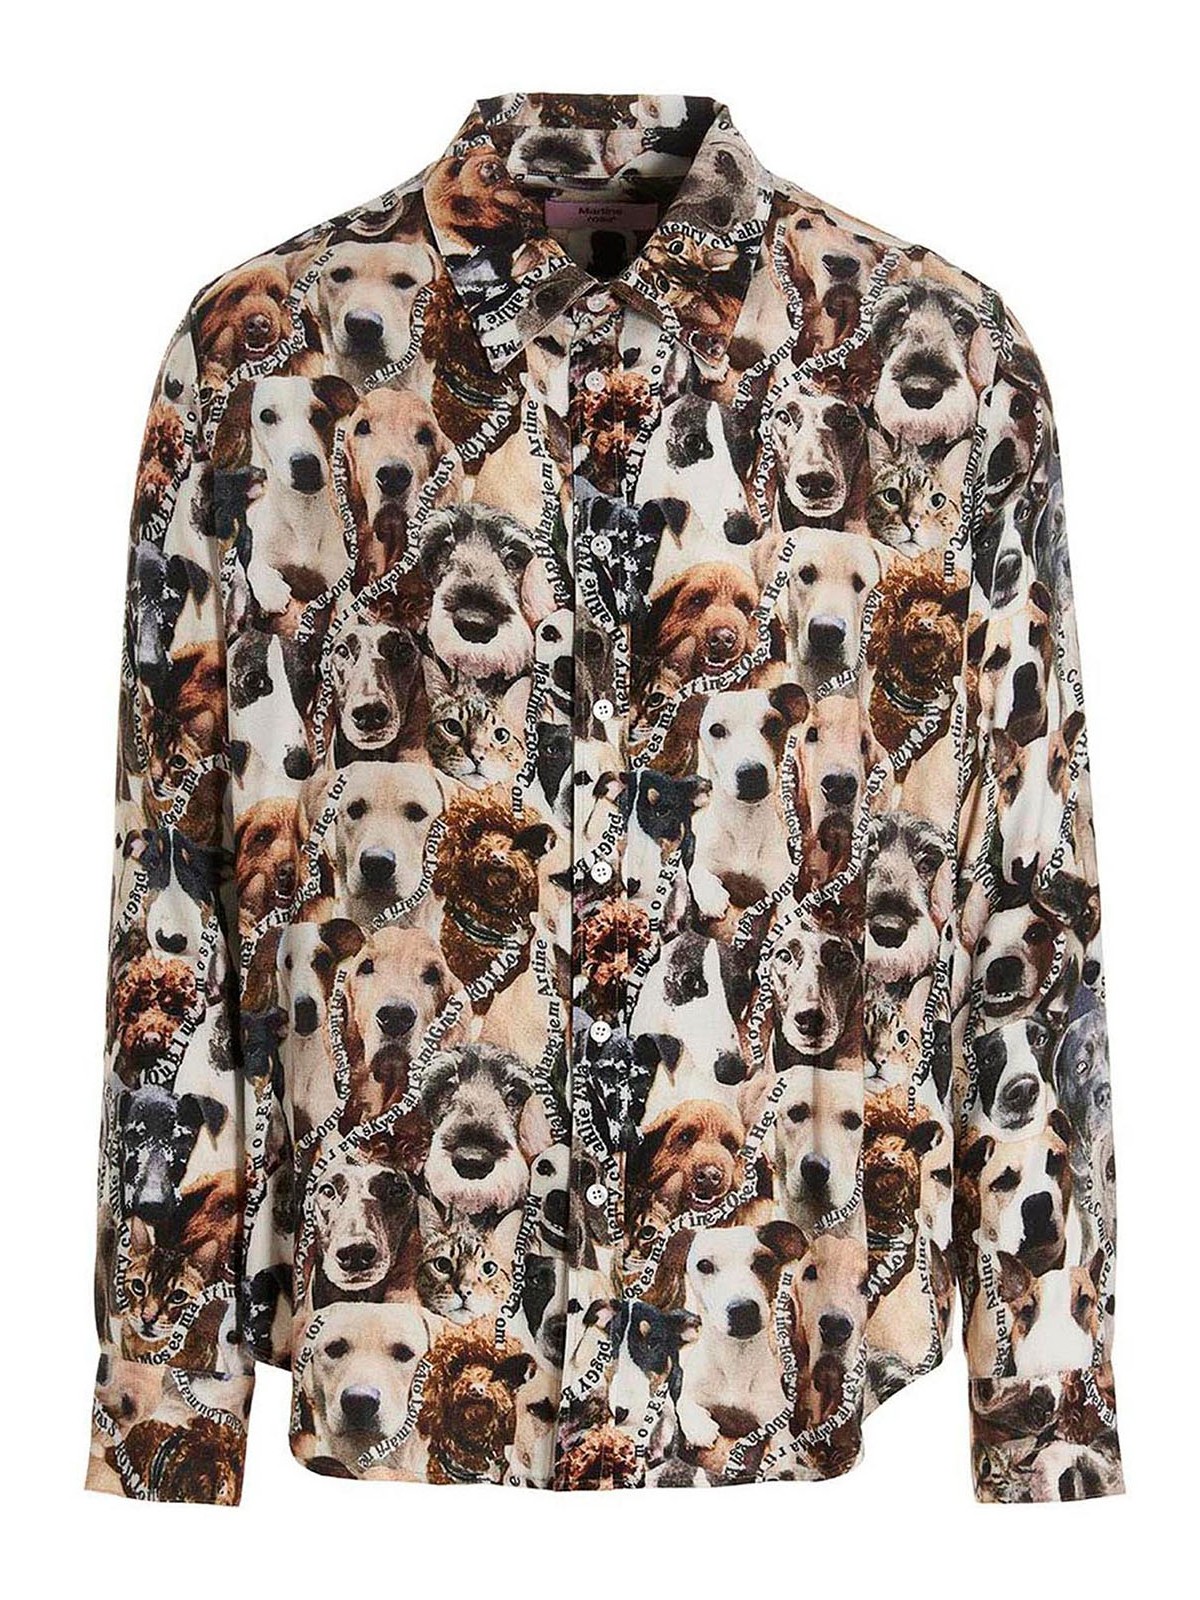 Shirts Martine Rose - Mrs cats & dogs shirt - MRSS23401DMRCND | iKRIX.com